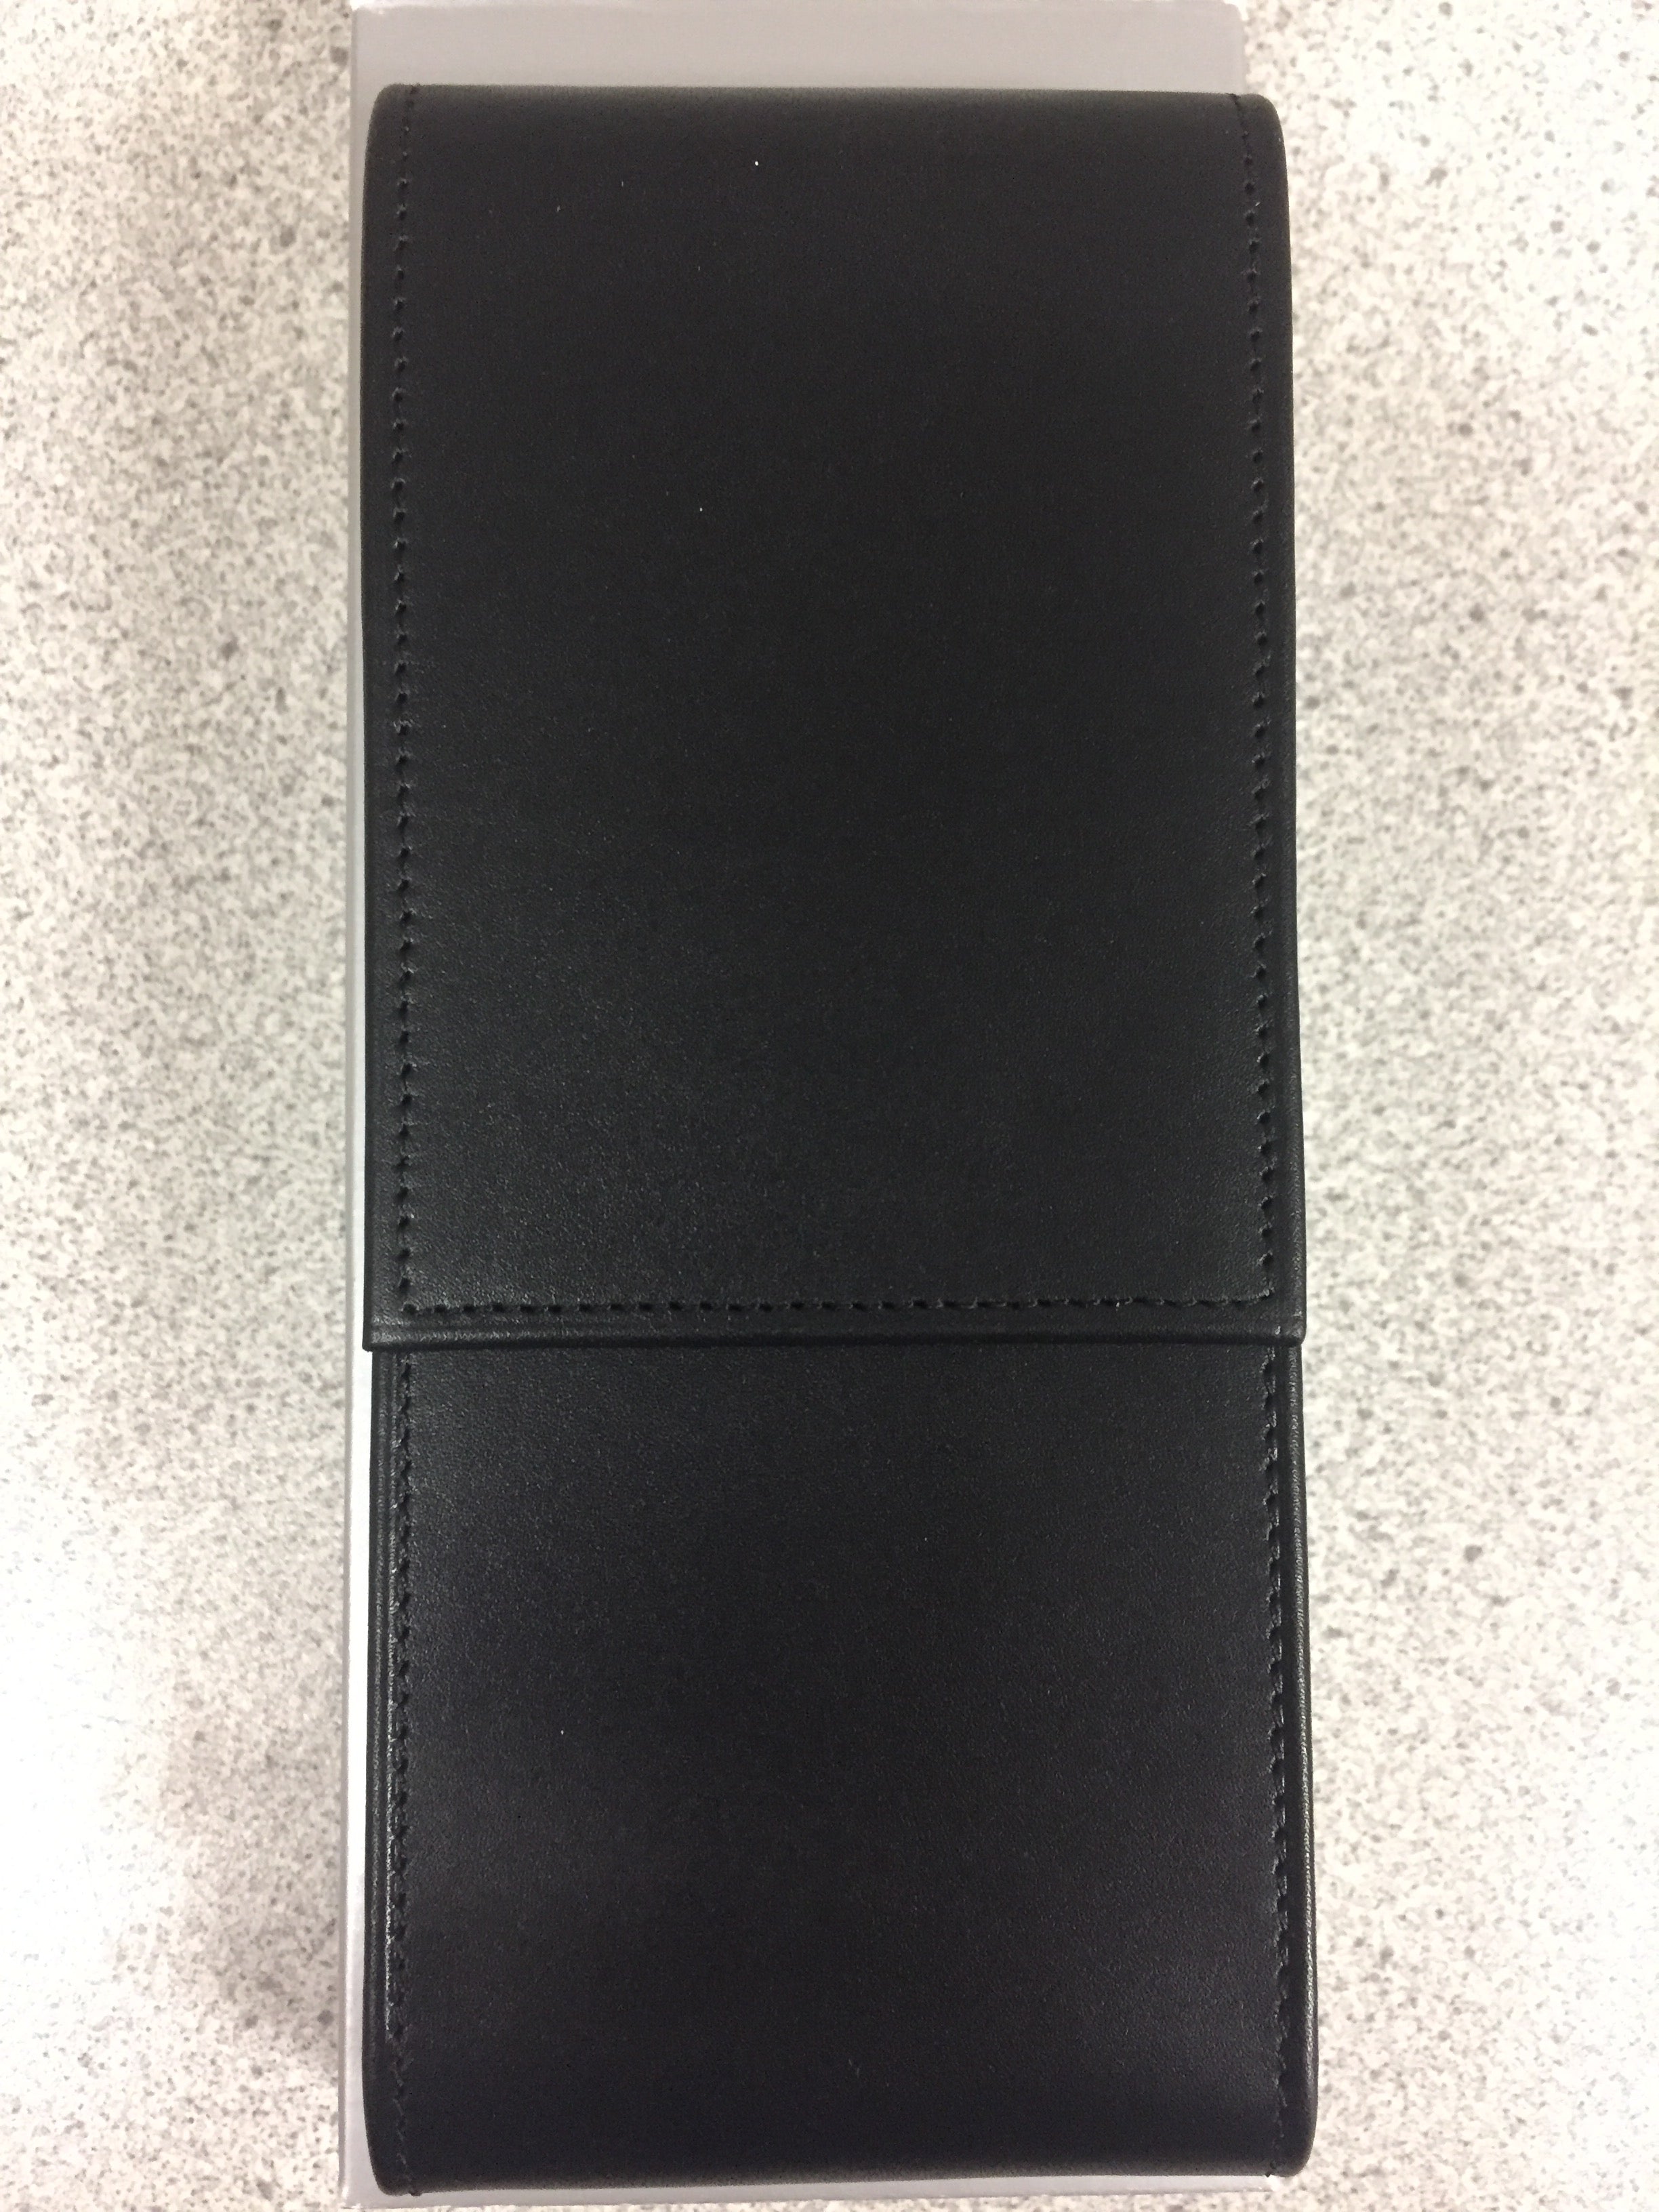 Lamy Einsteiger Pen Case - Black (Fits 3 Pen)-Pen Boutique Ltd